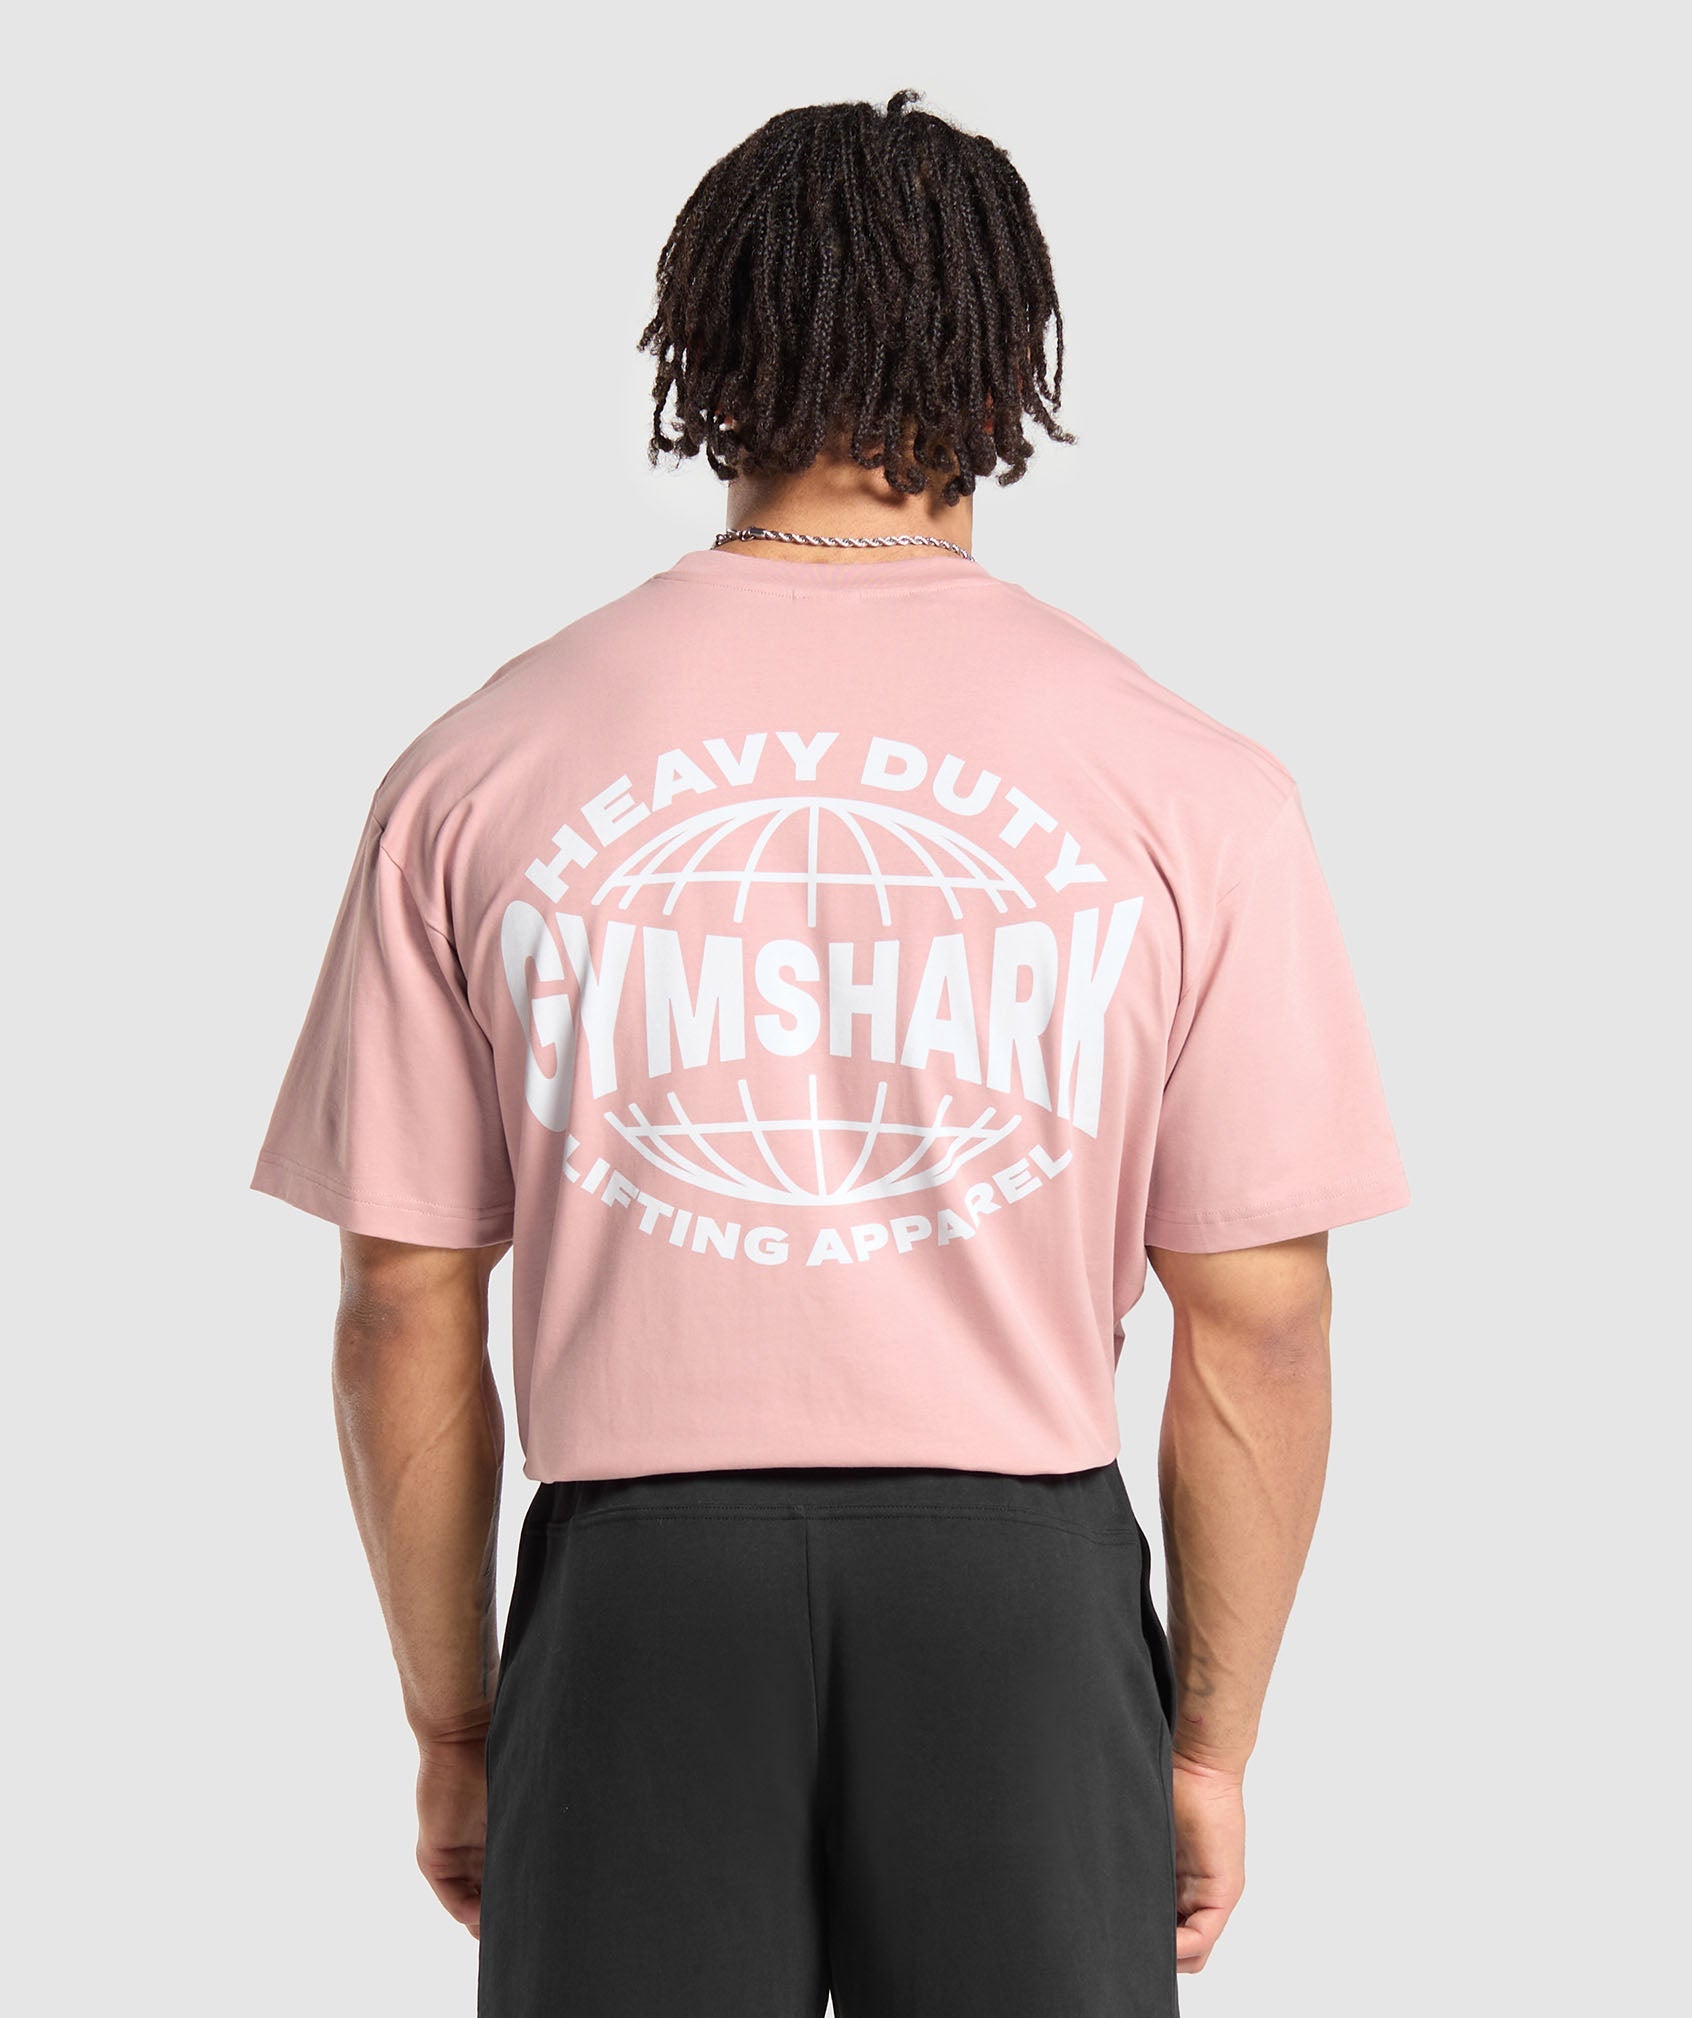 Heavy Duty Apparel T-Shirt in Light Pink